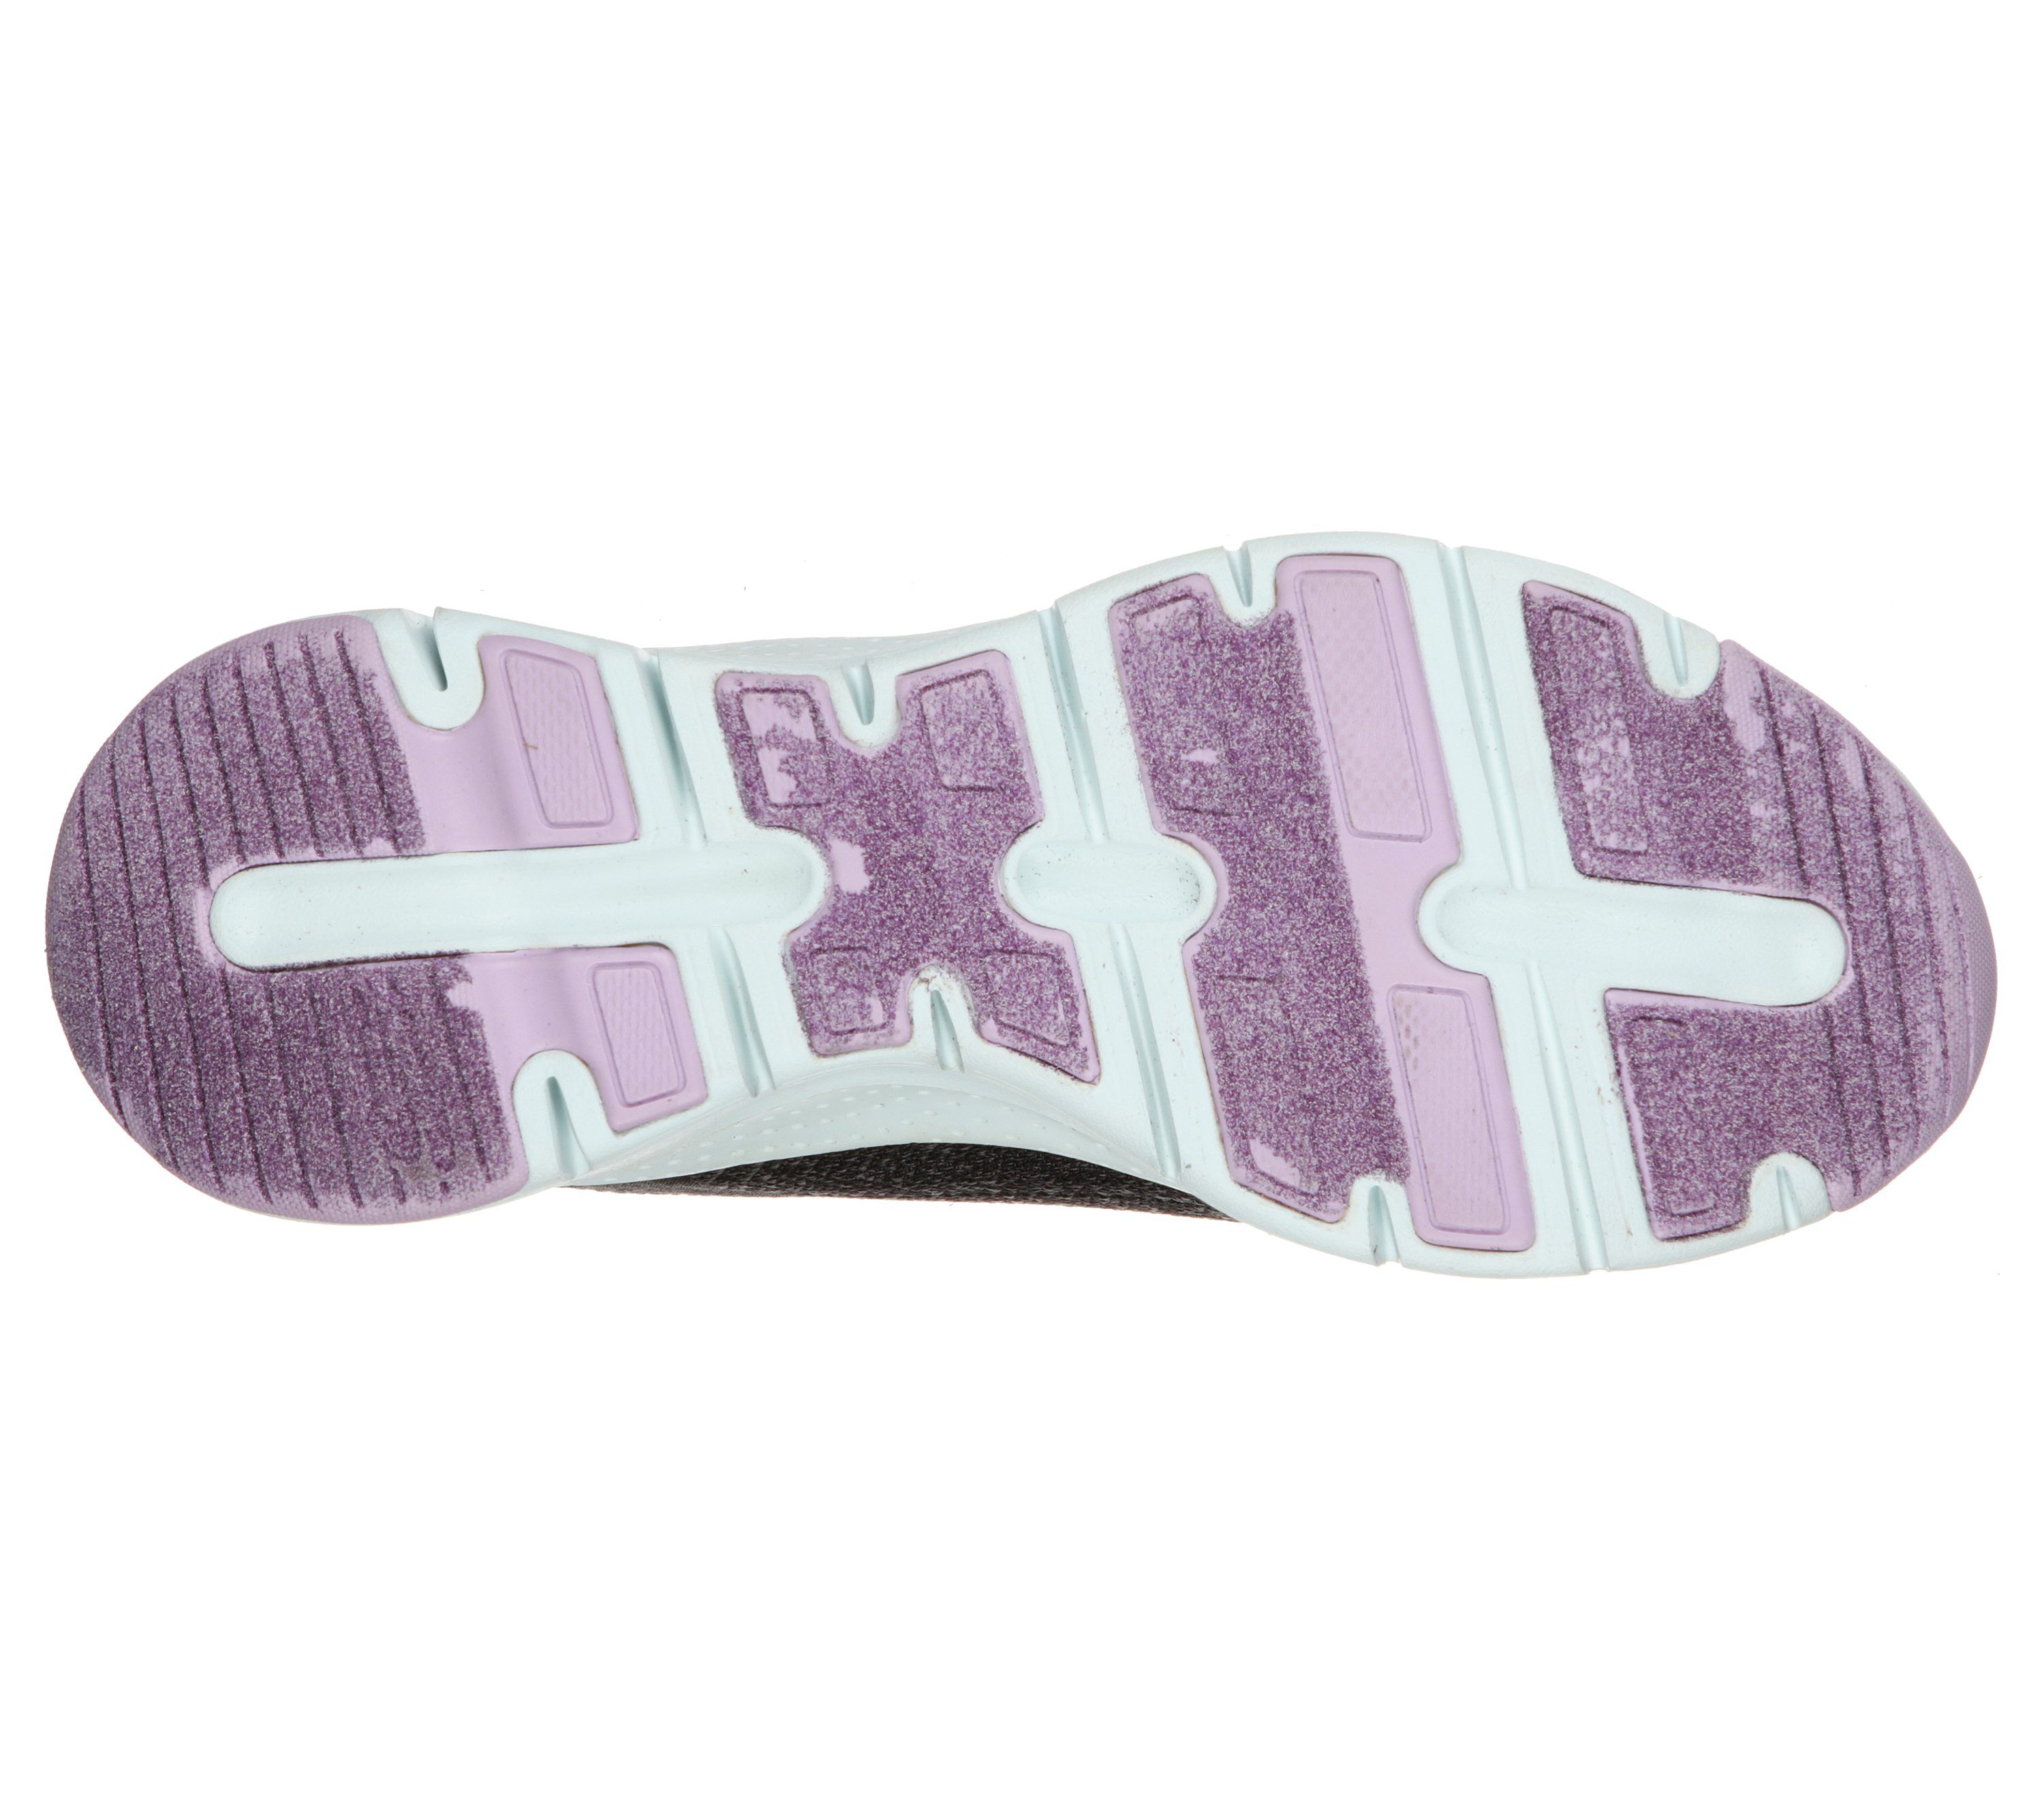 Skechers Arch Fit - Comfy Wave - Schwarz / Violet Textil